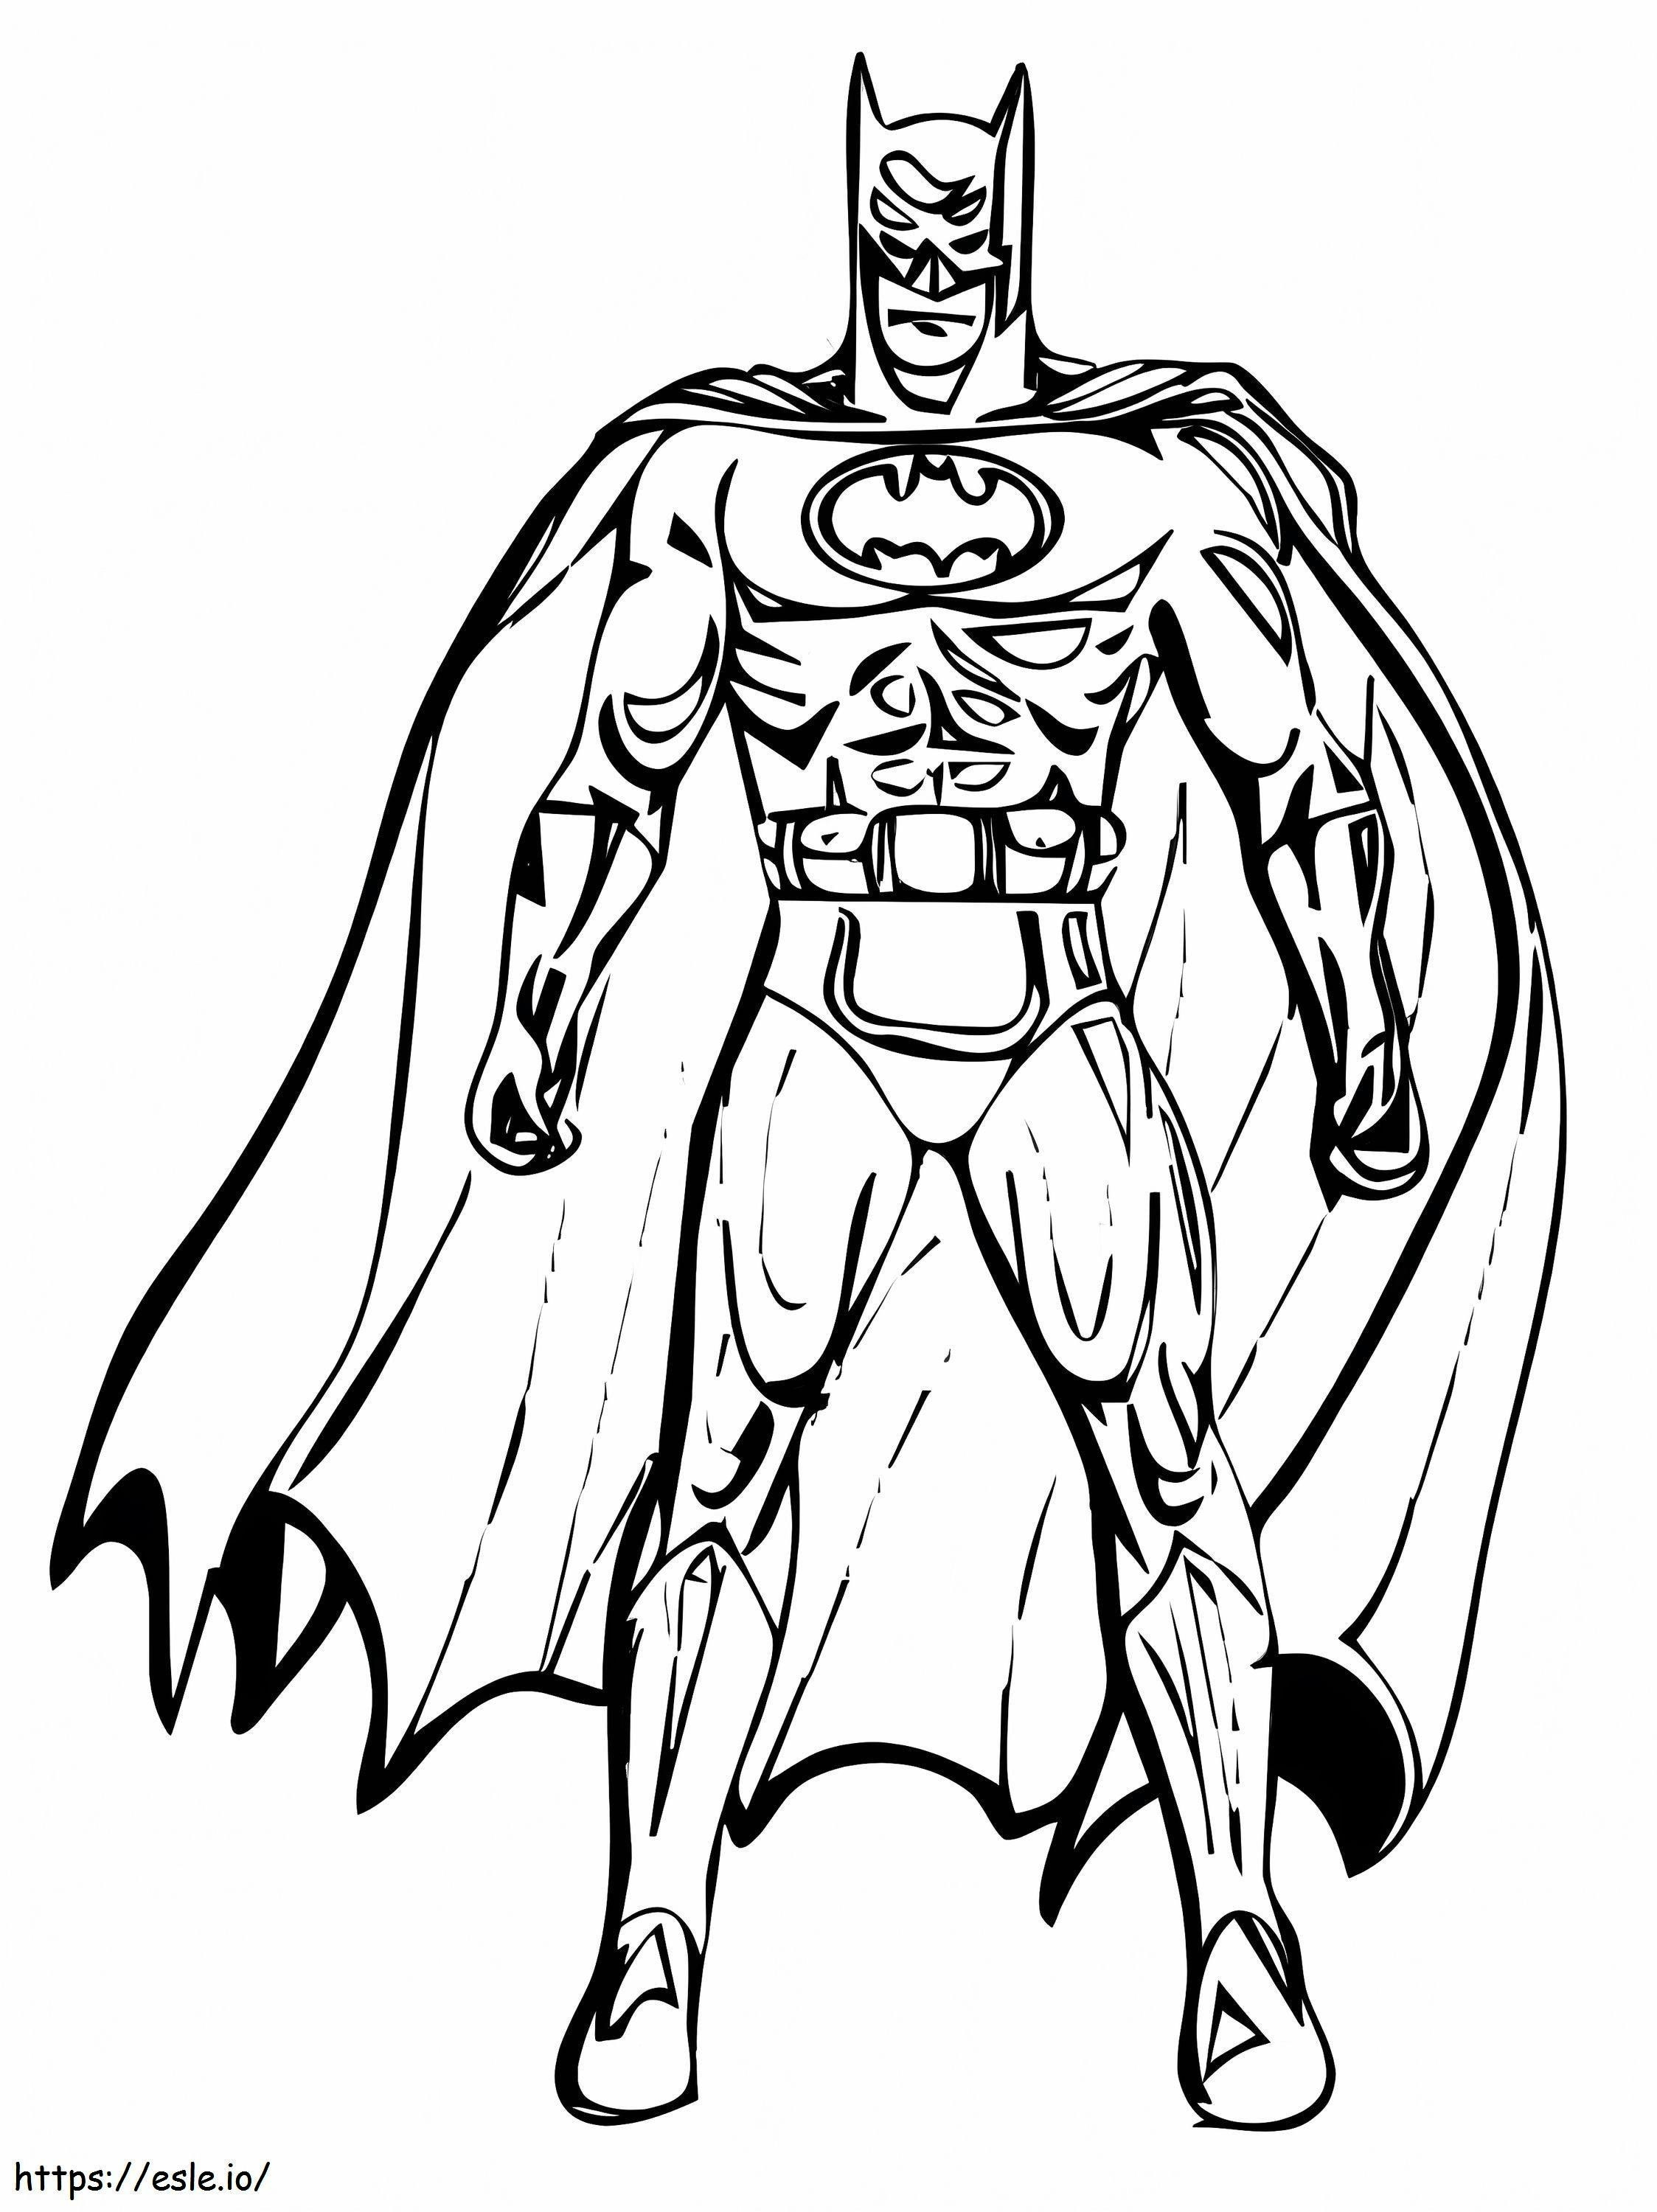 Disegno di Batman da colorare